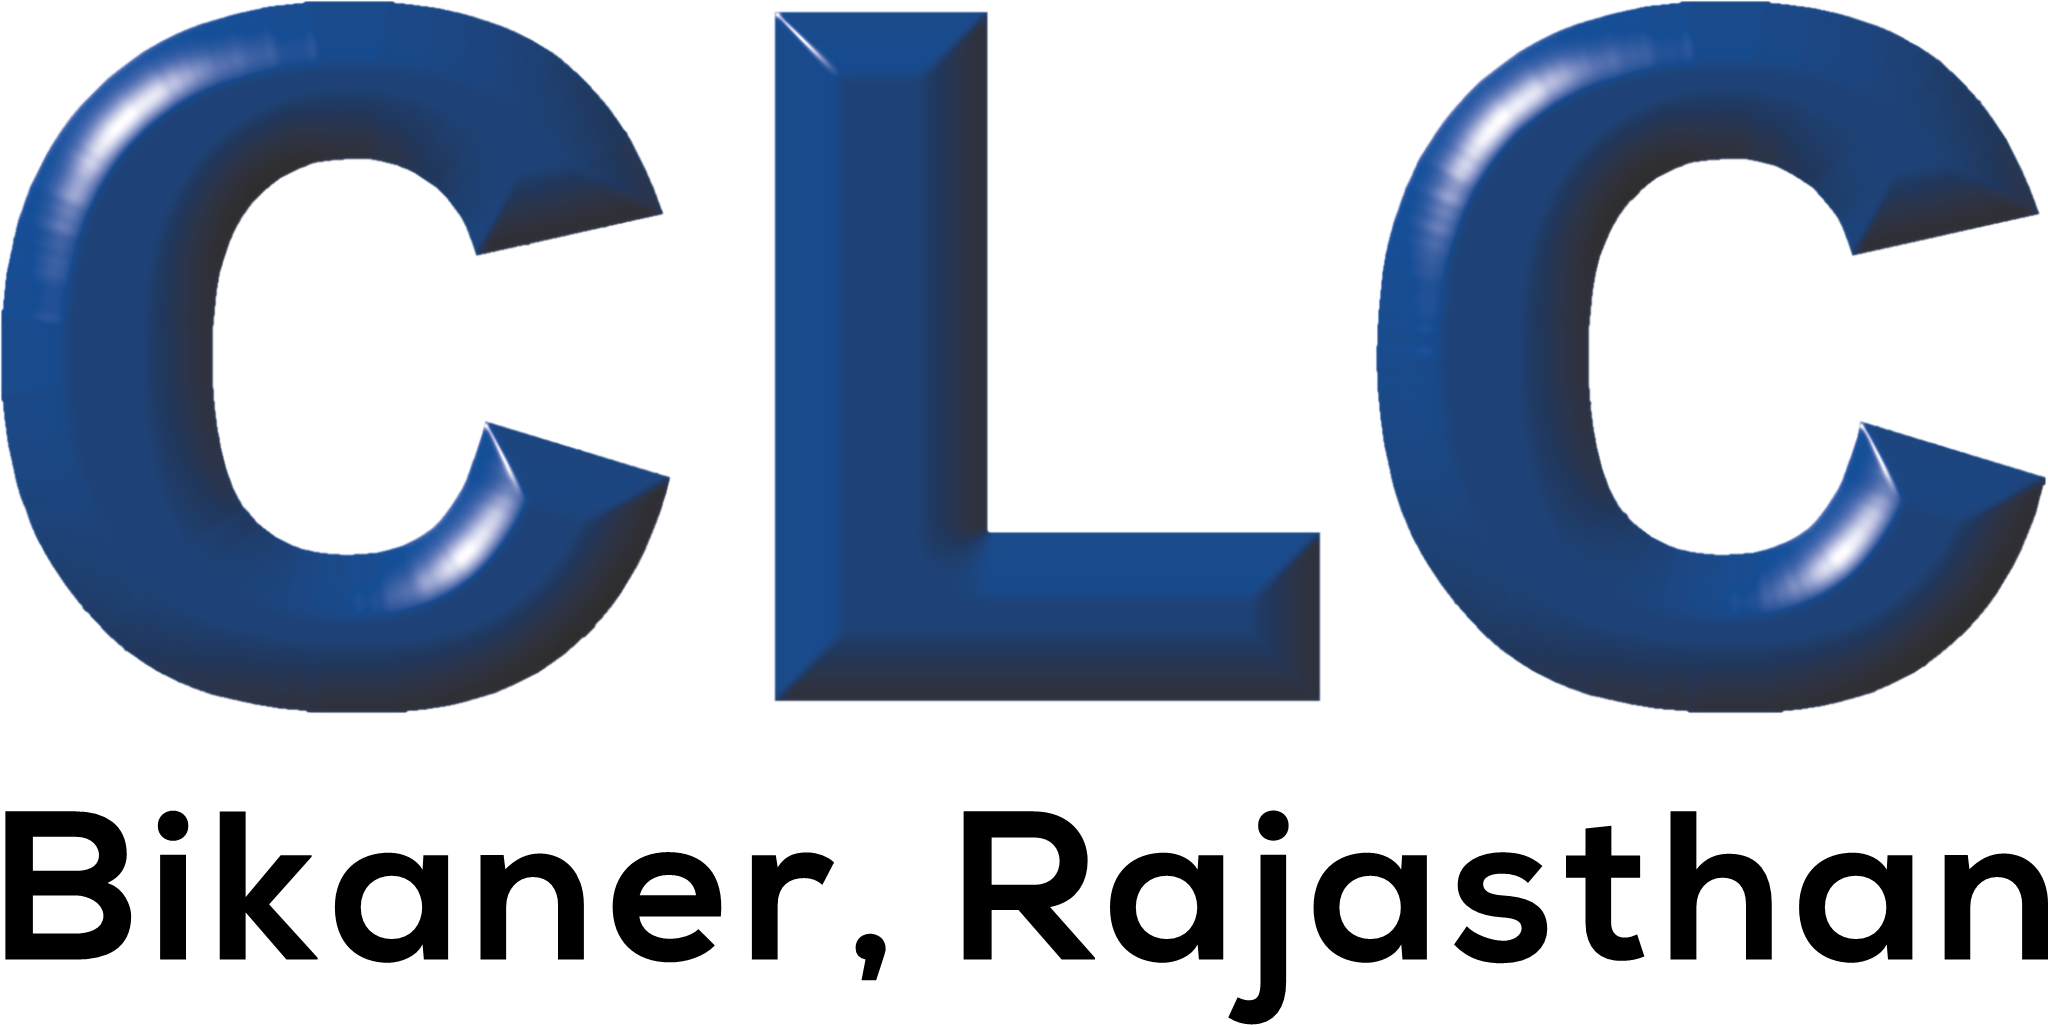 clc-bikaner-logo